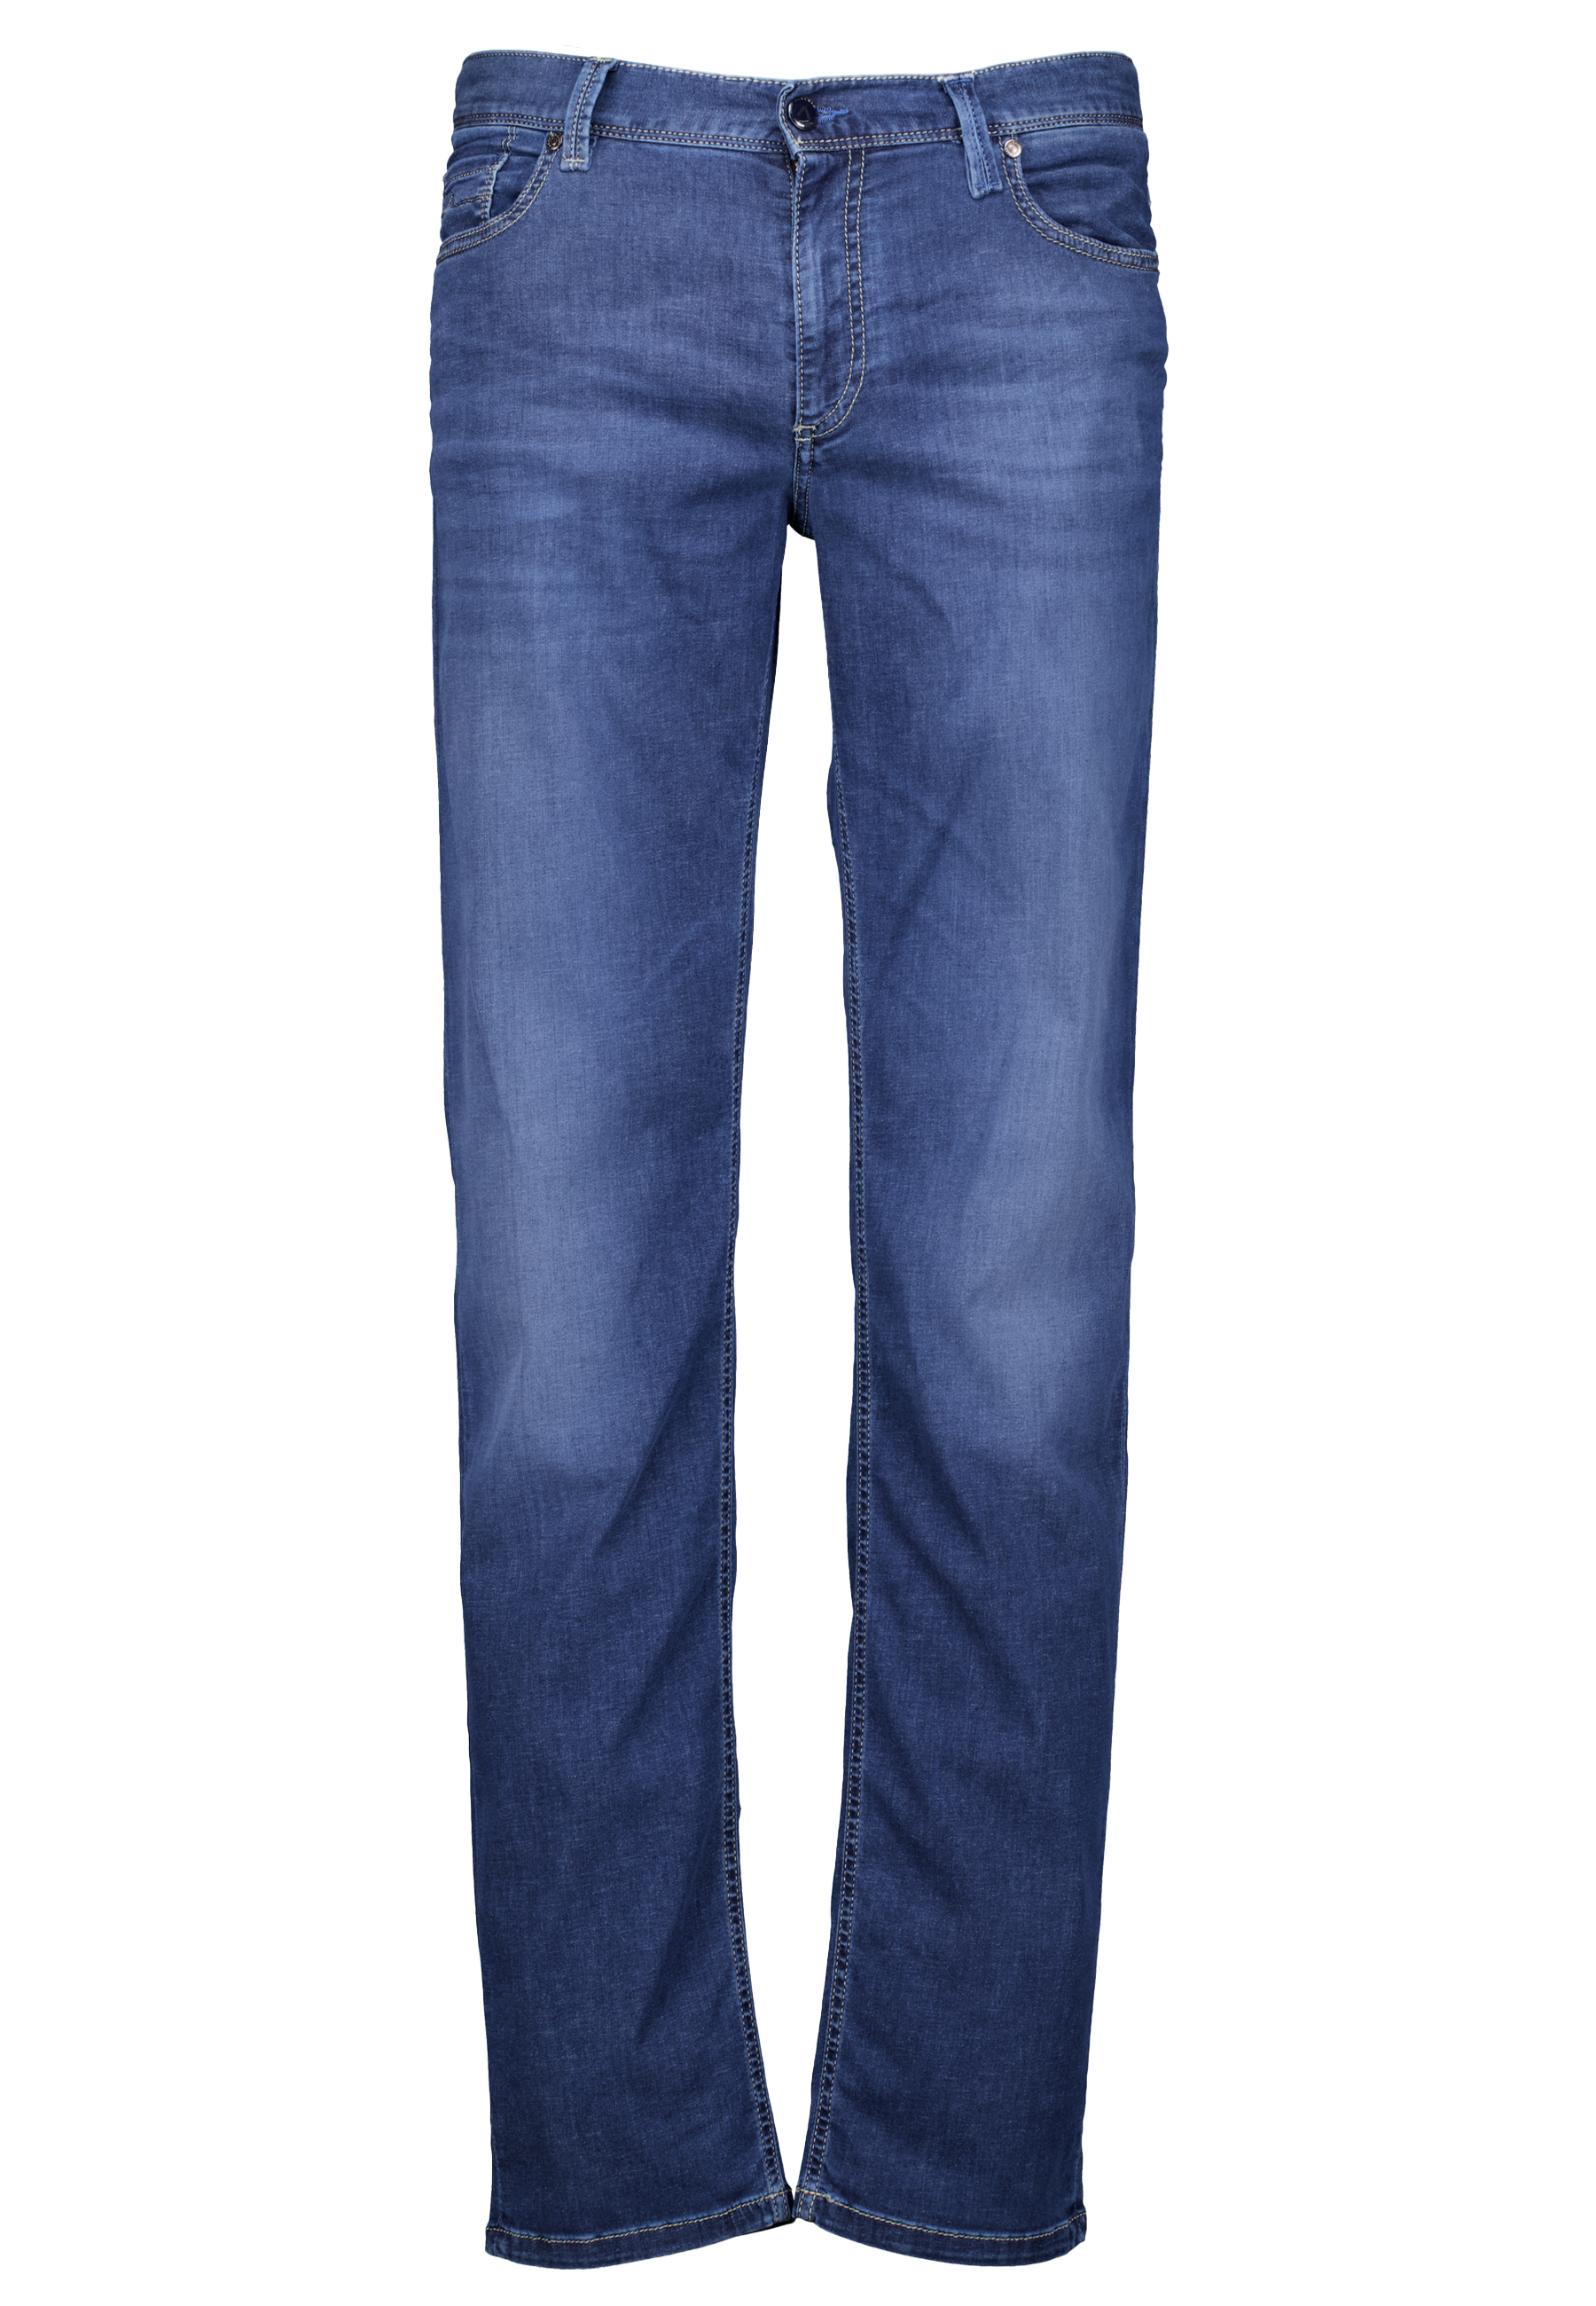 Alberto jeans donkerblauw Heren maat 33/34